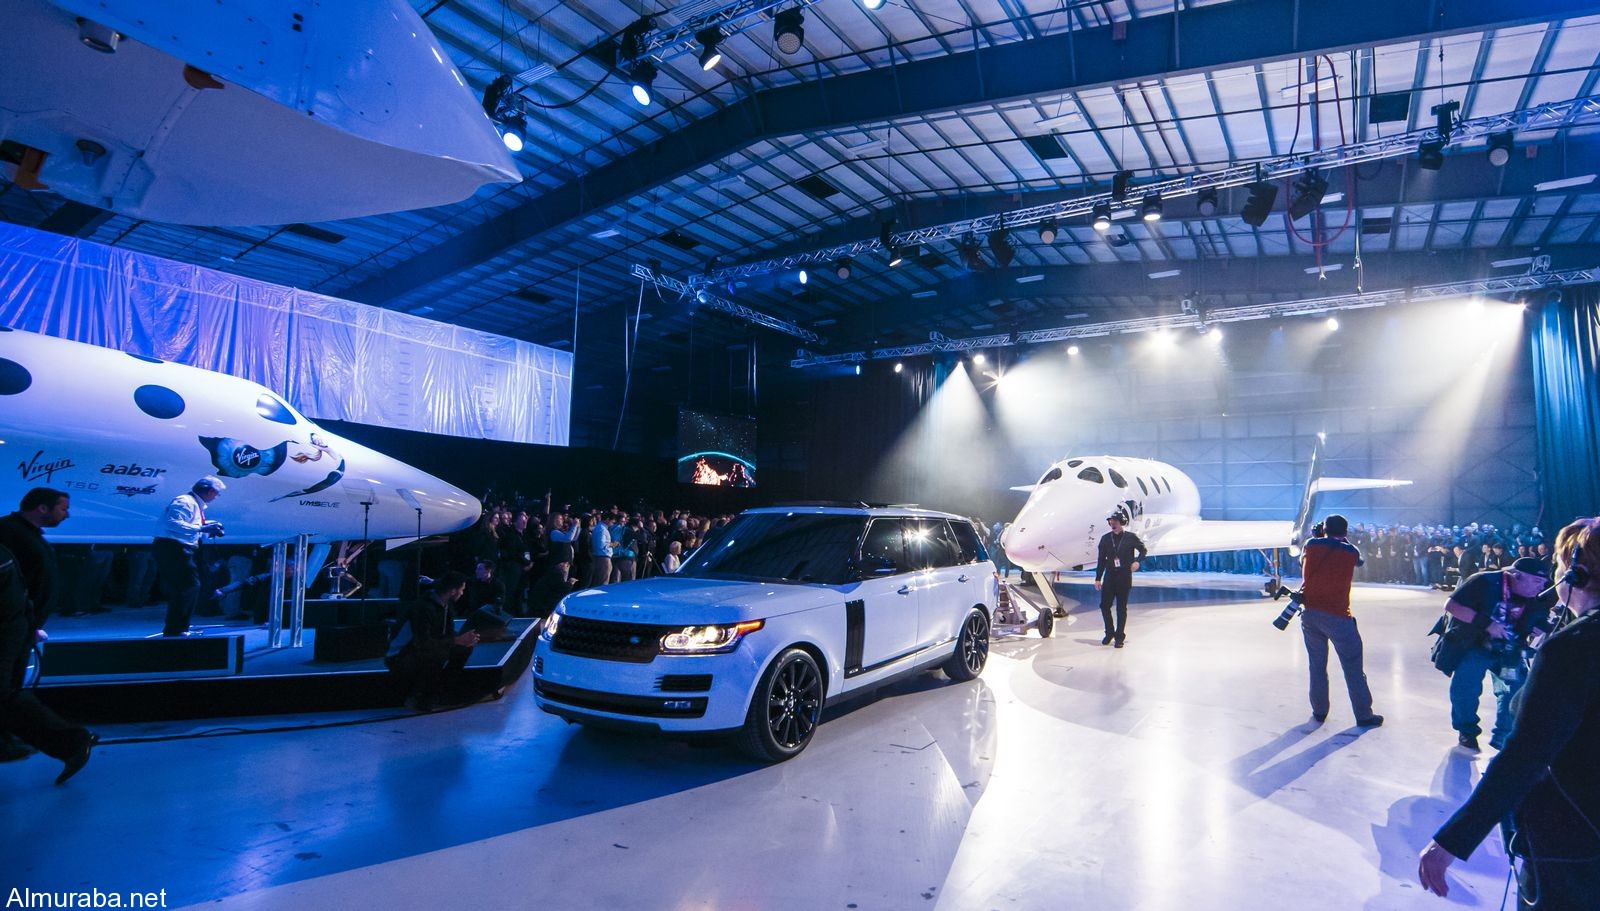 "رنج روفر" اوتوبيوغرافي تشارك في حفل إطلاق طائرة الفضاء الجديدة Range Rover 2016 14